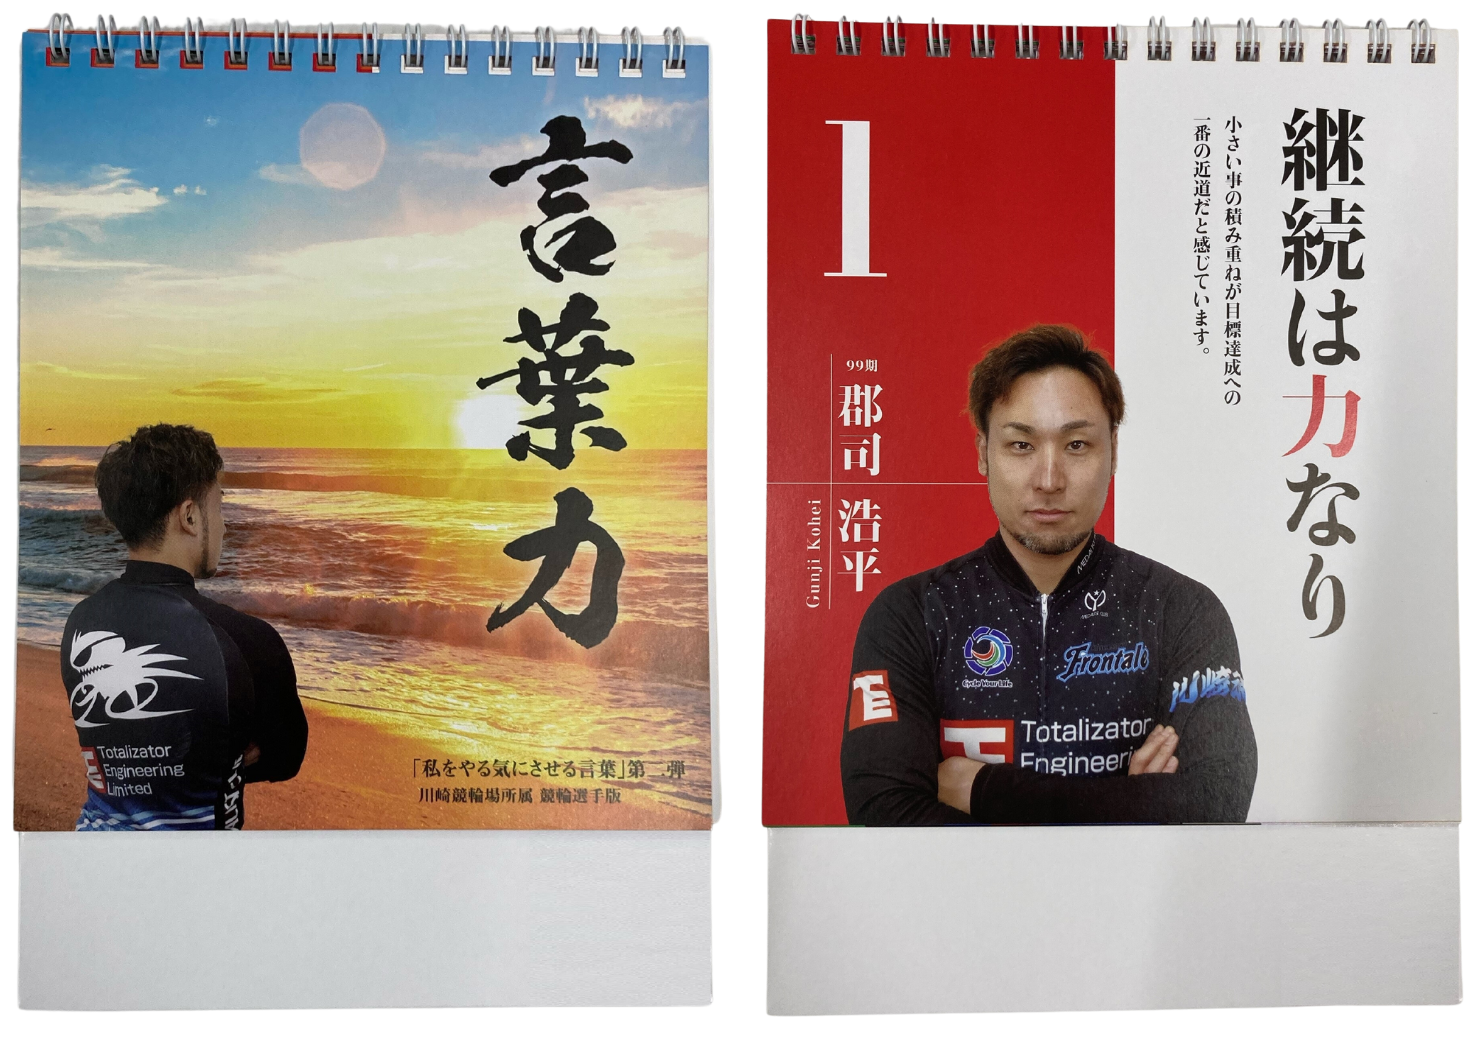 川崎競輪場選手日めくりカレンダー